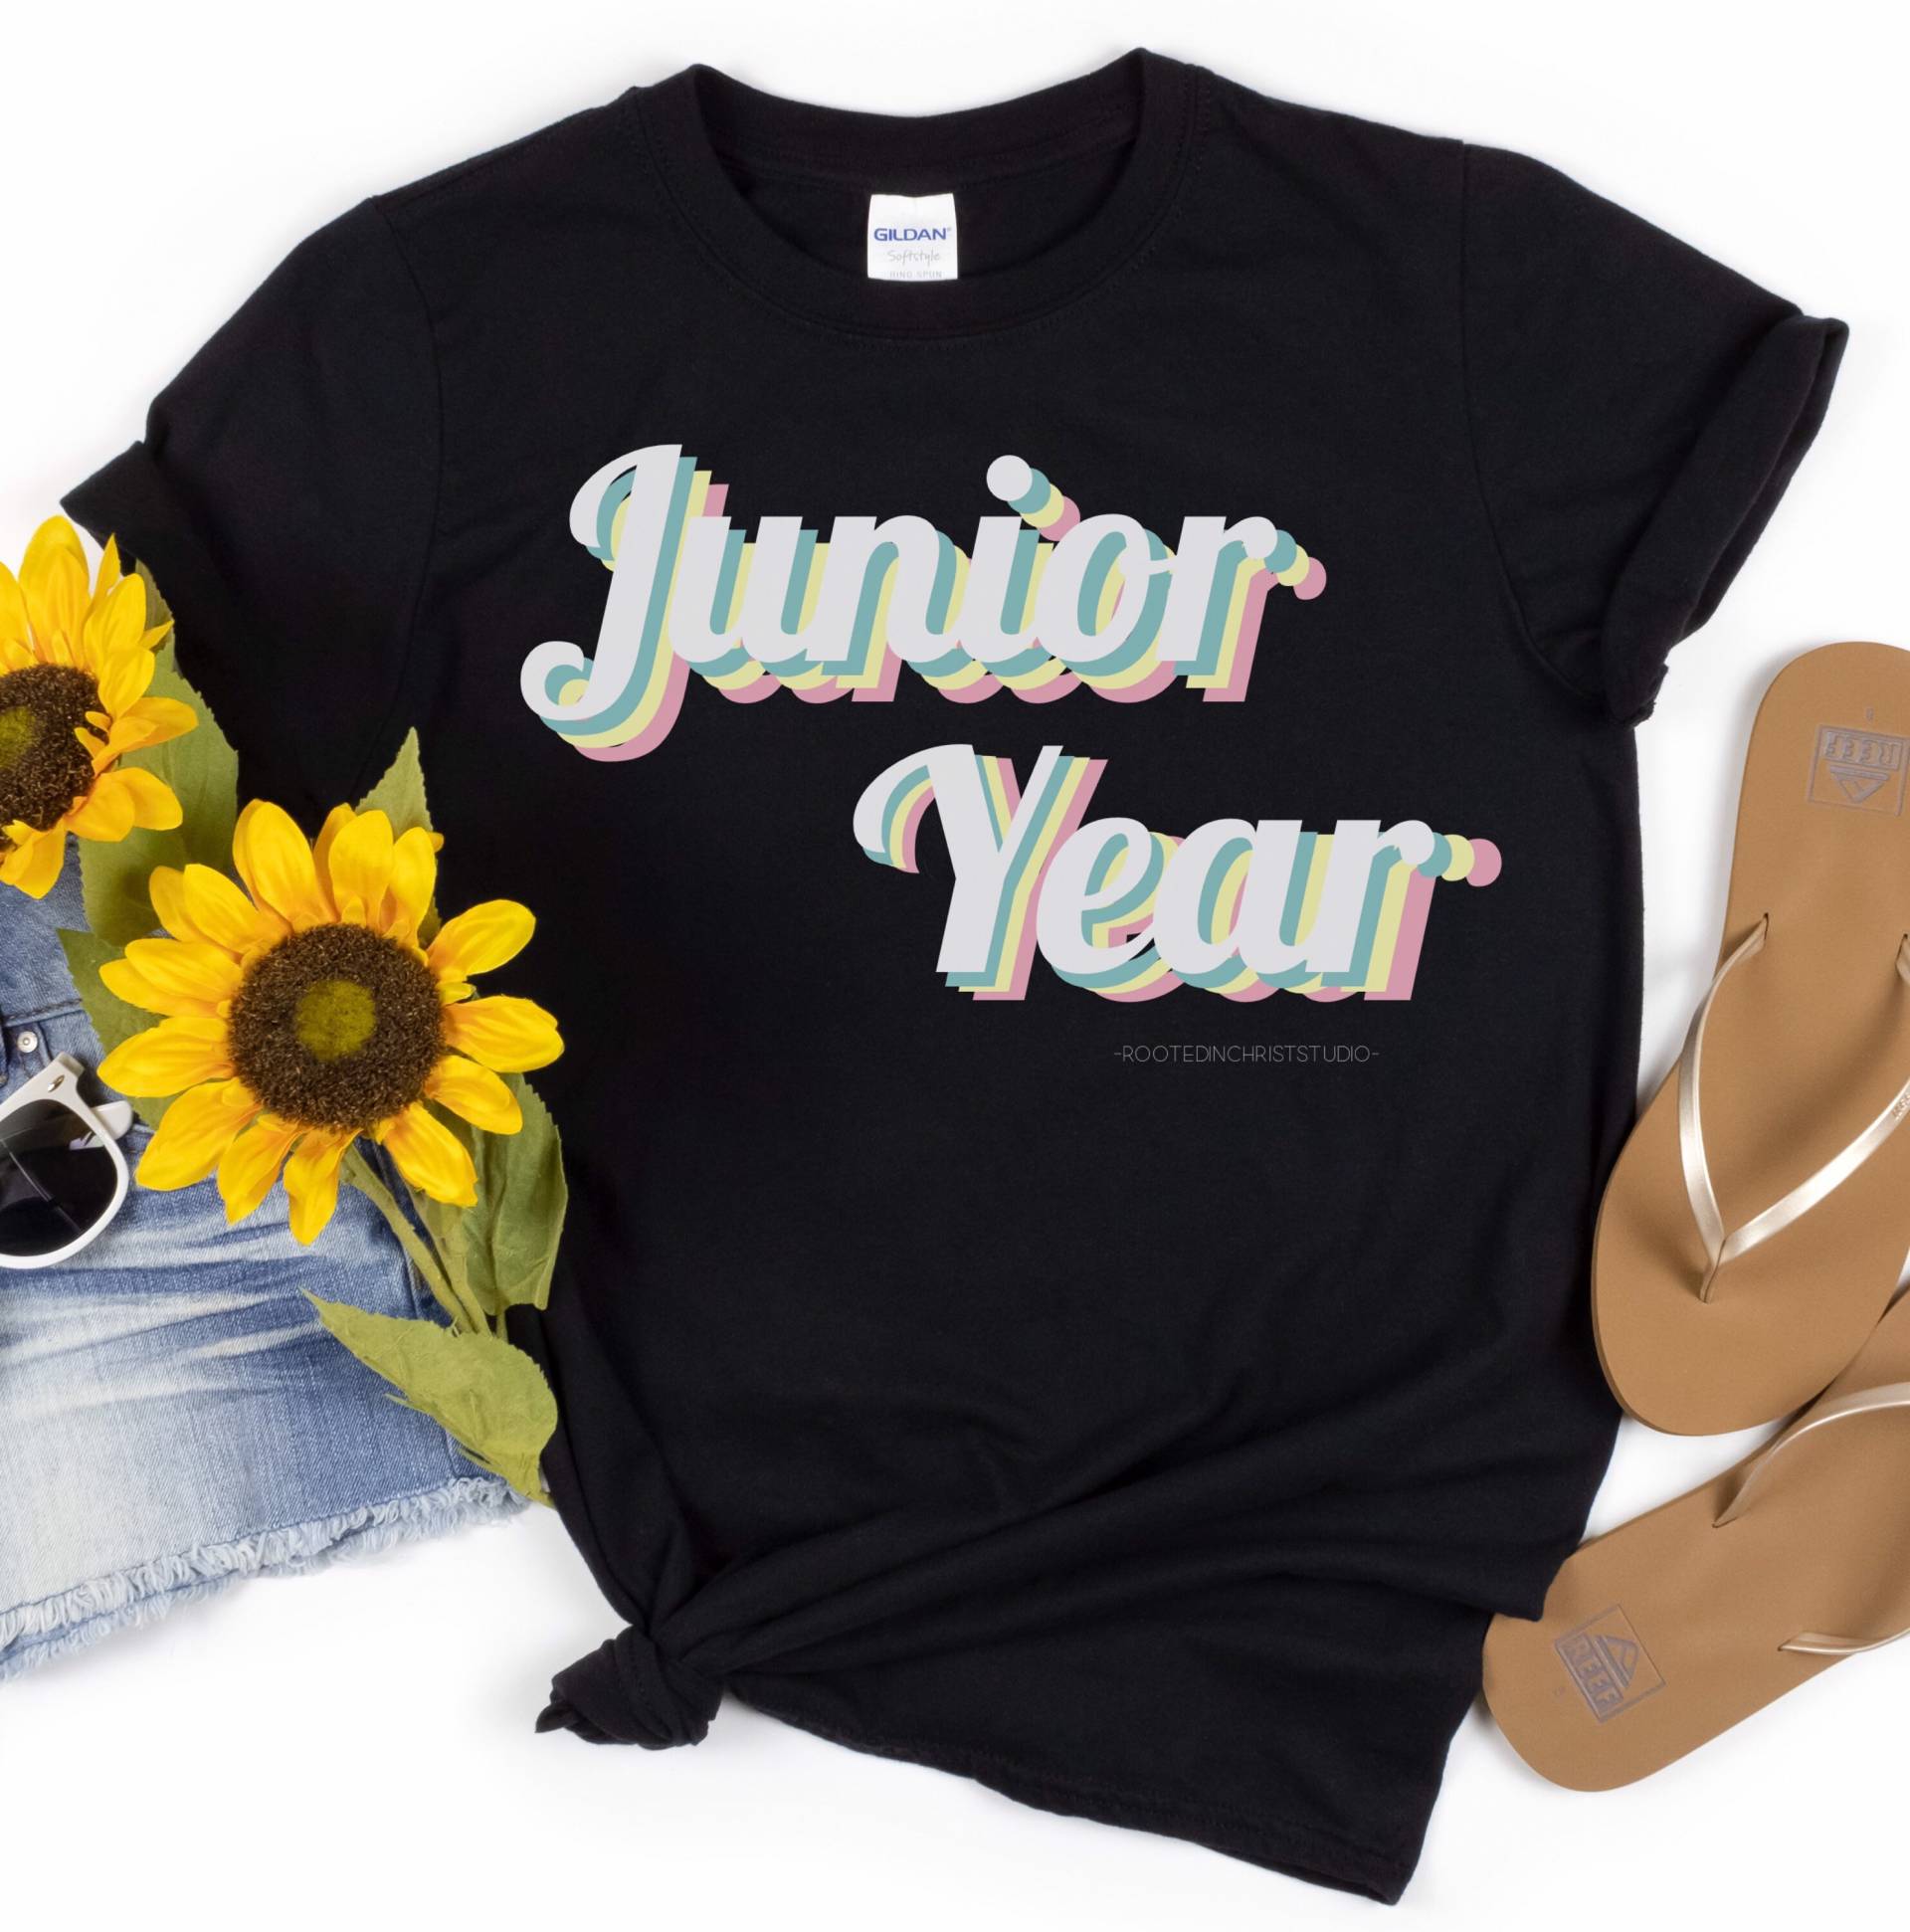 Jugendjahr Retro Regenbogen Shirt, Junior Year T-Shirt, Erster Tag Des Juniorjahres, Life, Back To School T-Shirt von RootedInChristStudio